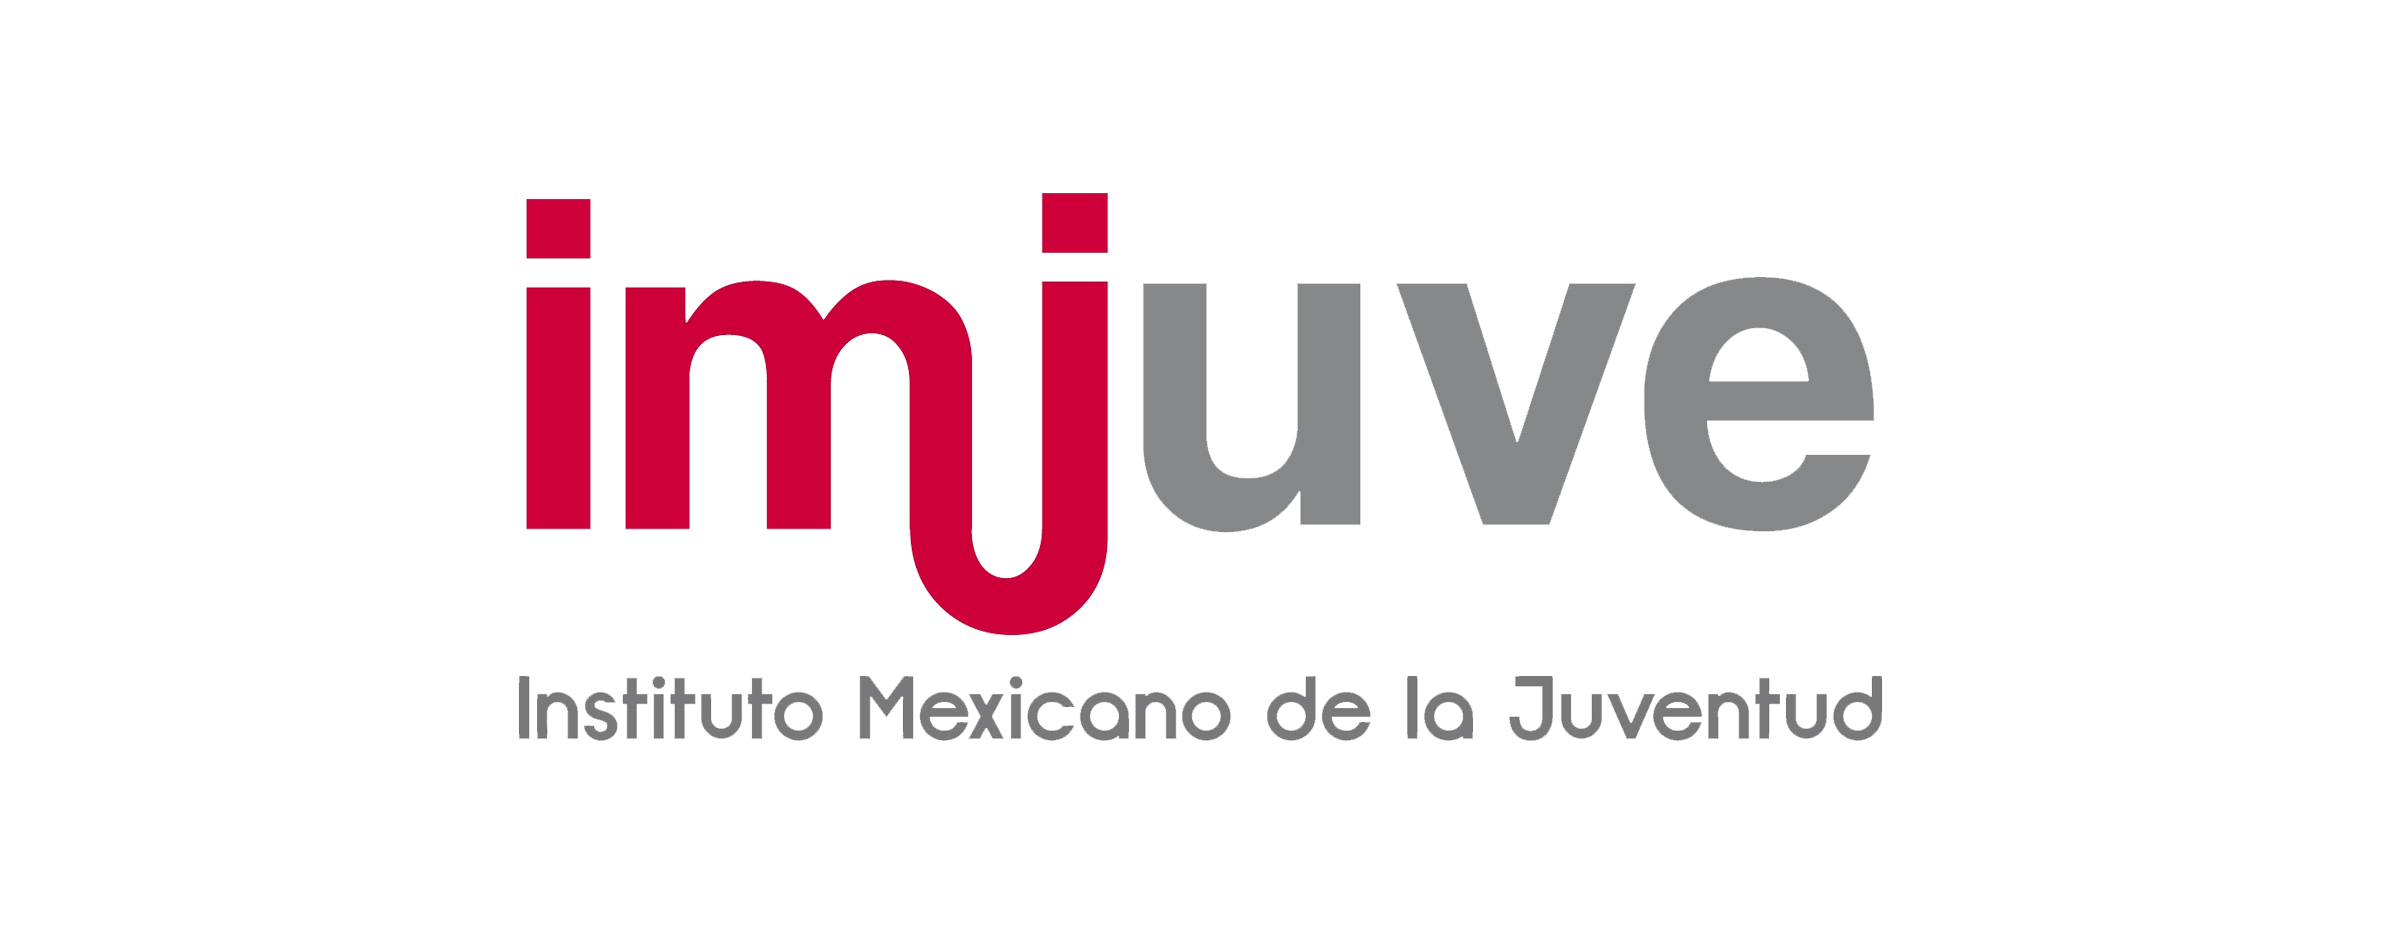 Logo del Instituto Mexicano de la Juventud (IMJUVE)